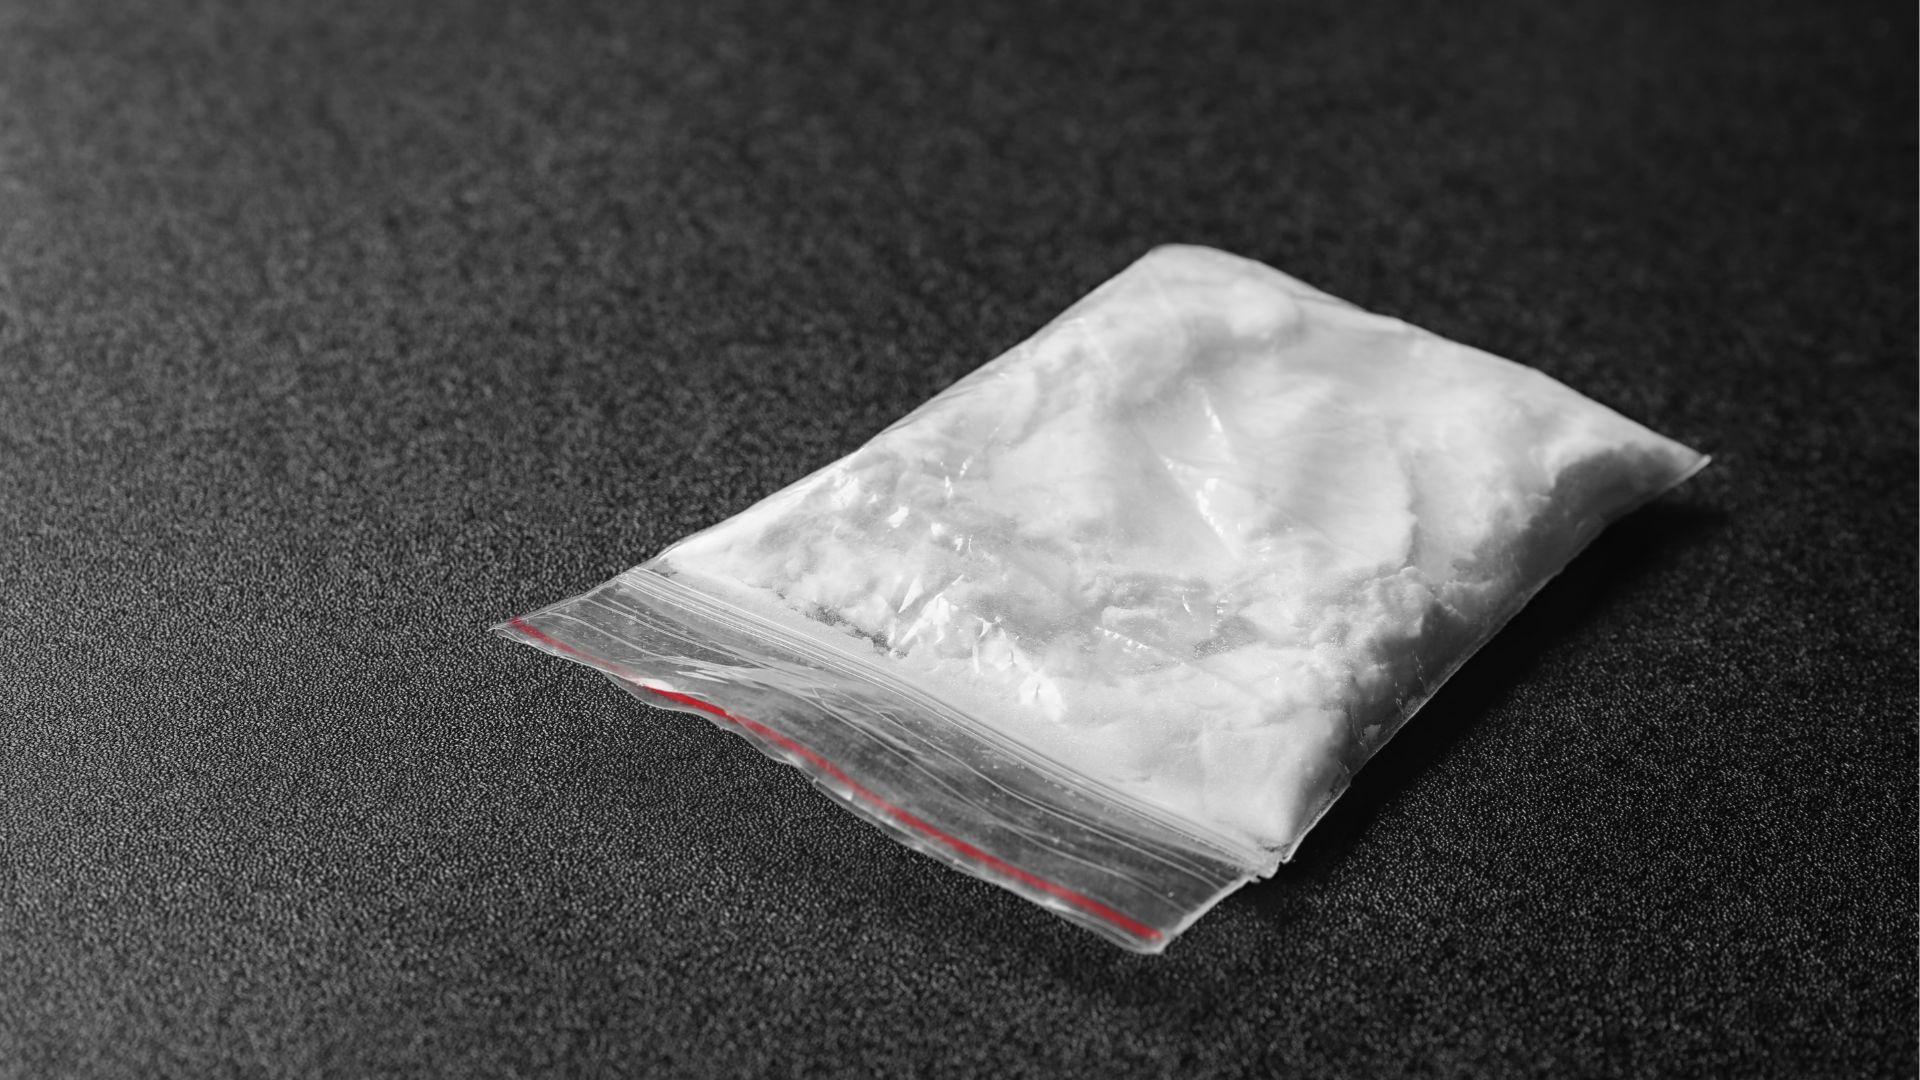 Bag of Heroin